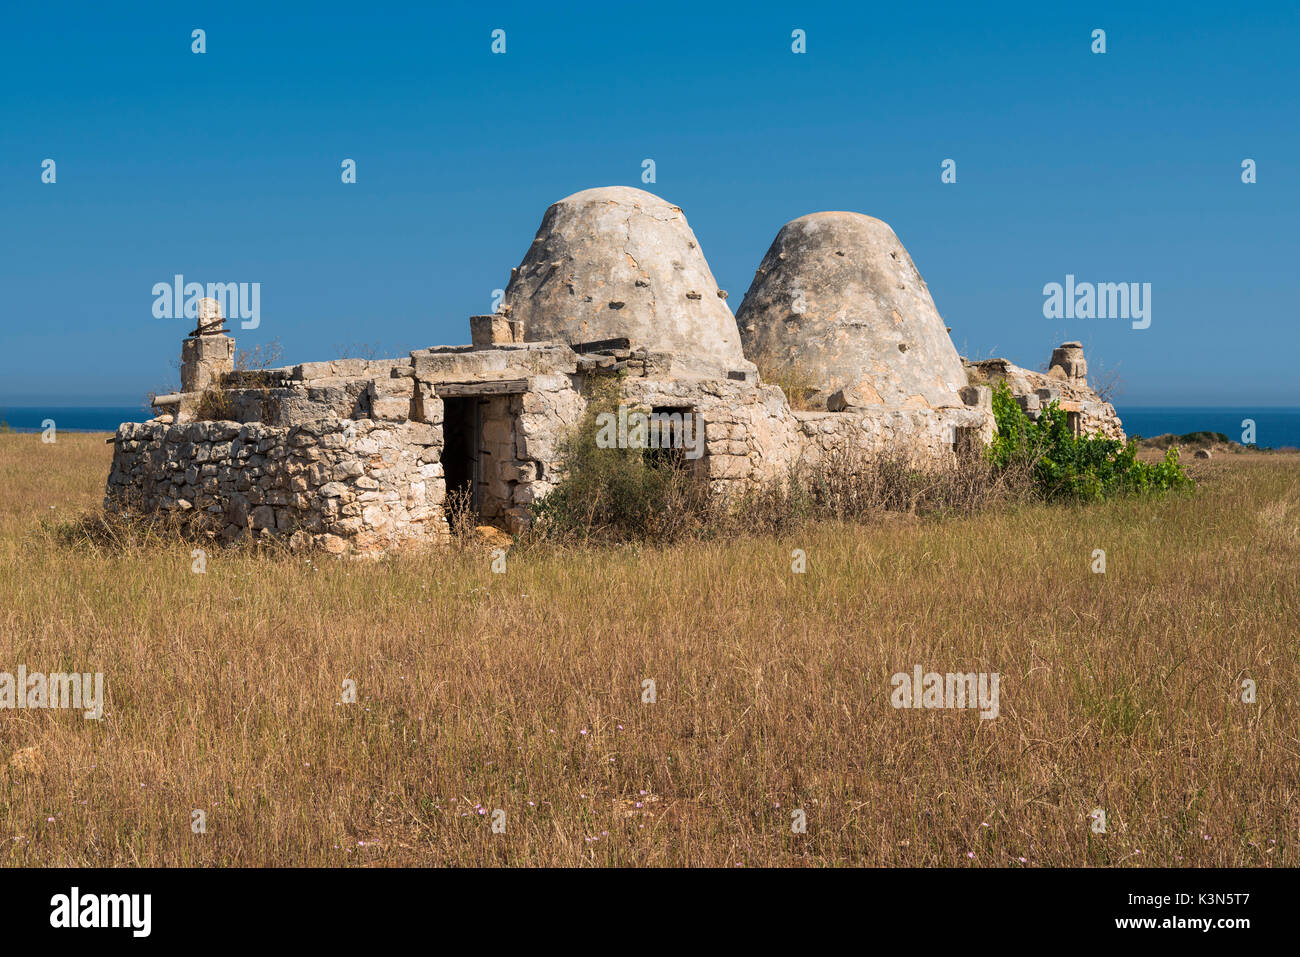 Cozze, Mola di Bari, province de Bari, Pouilles, Italie. Cabane en pierre sèche traditionnelle des Pouilles Banque D'Images